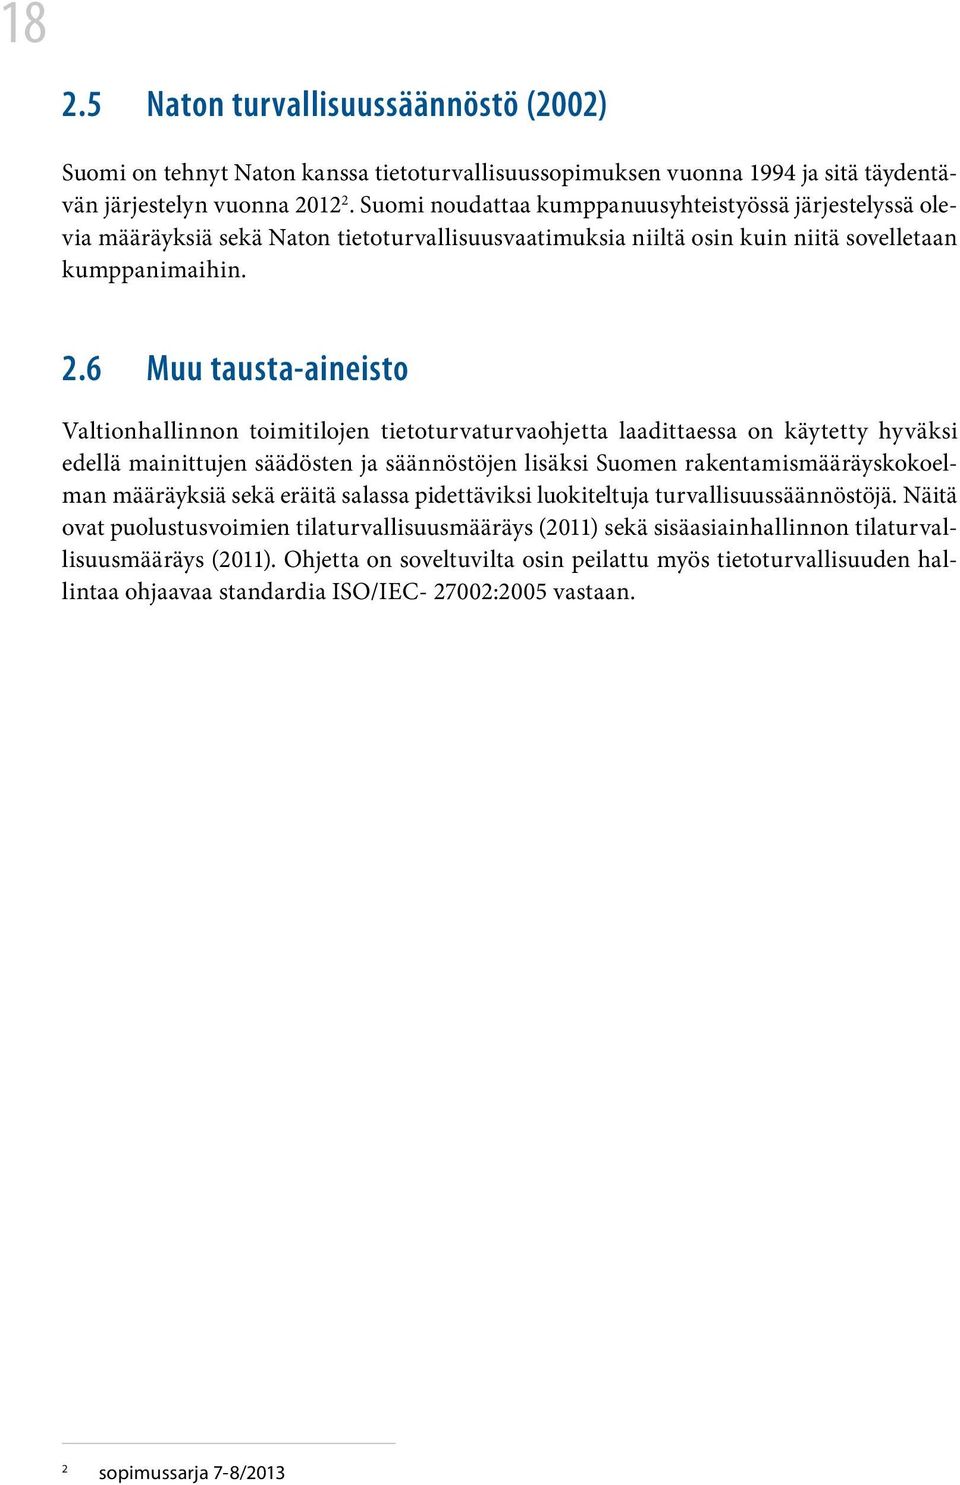 6 Muu tausta-aineisto Valtionhallinnon toimitilojen tietoturvaturvaohjetta laadittaessa on käytetty hyväksi edellä mainittujen säädösten ja säännöstöjen lisäksi Suomen rakentamismääräyskokoelman